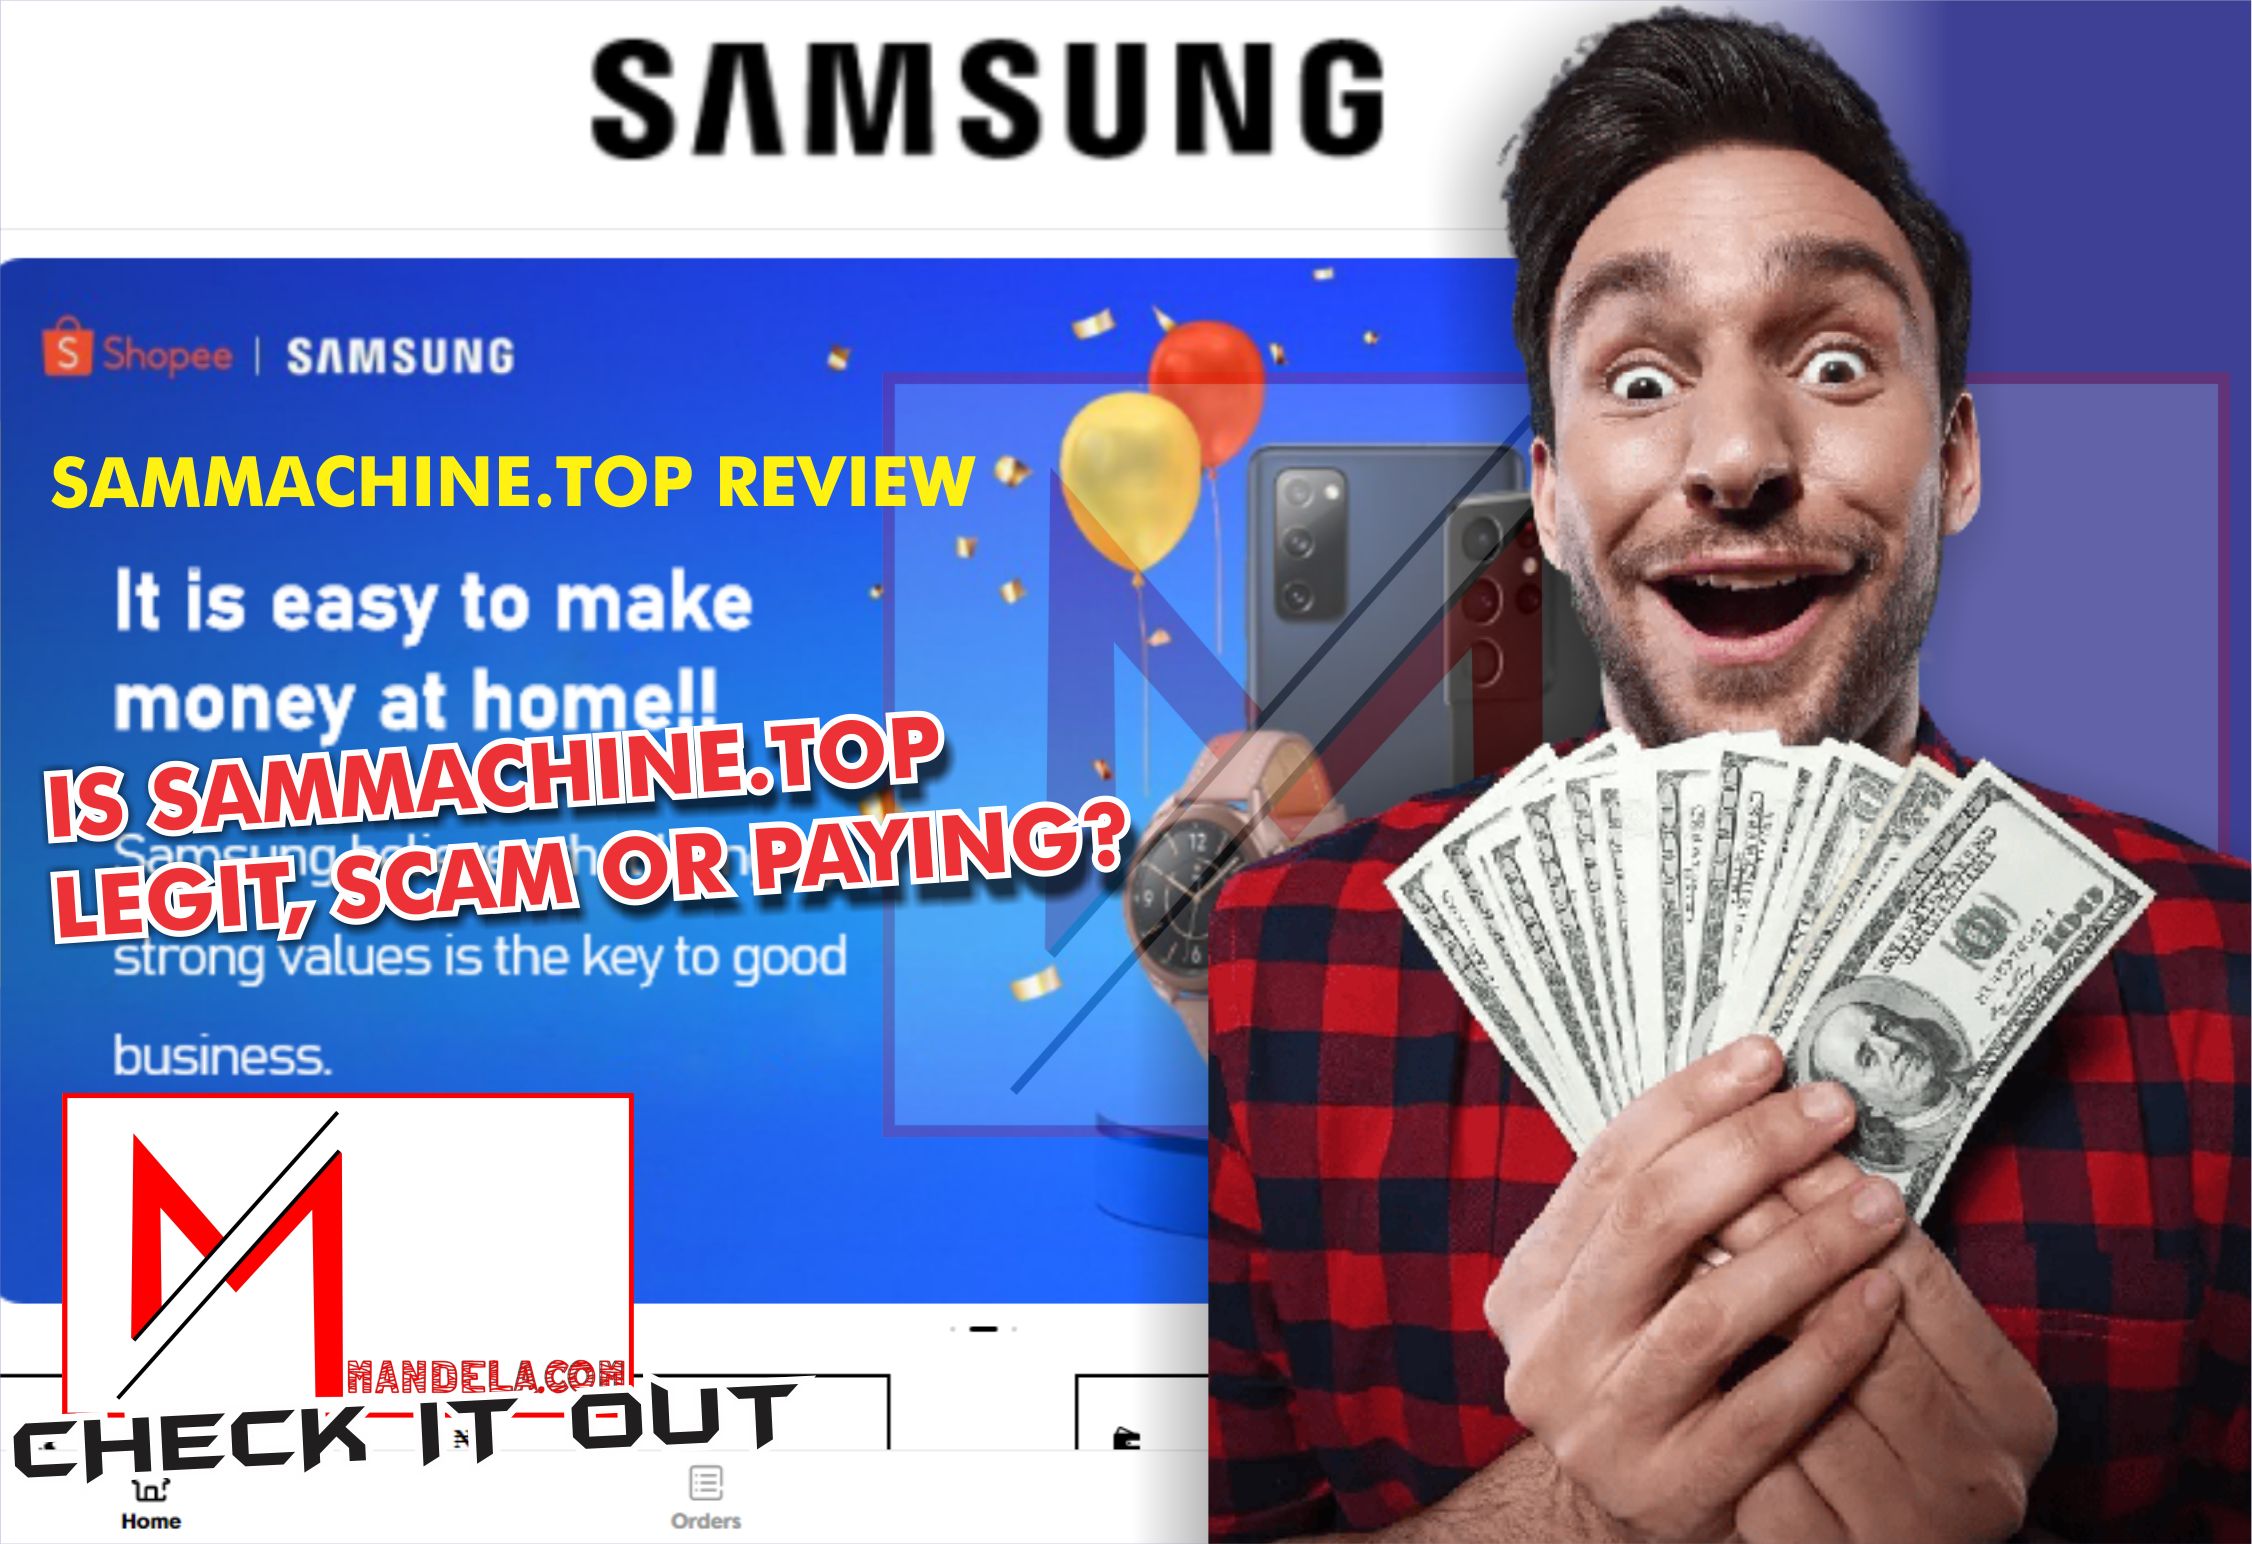 Sammachine.top Review (Sammachine.top Legit, Scam or Paying?)